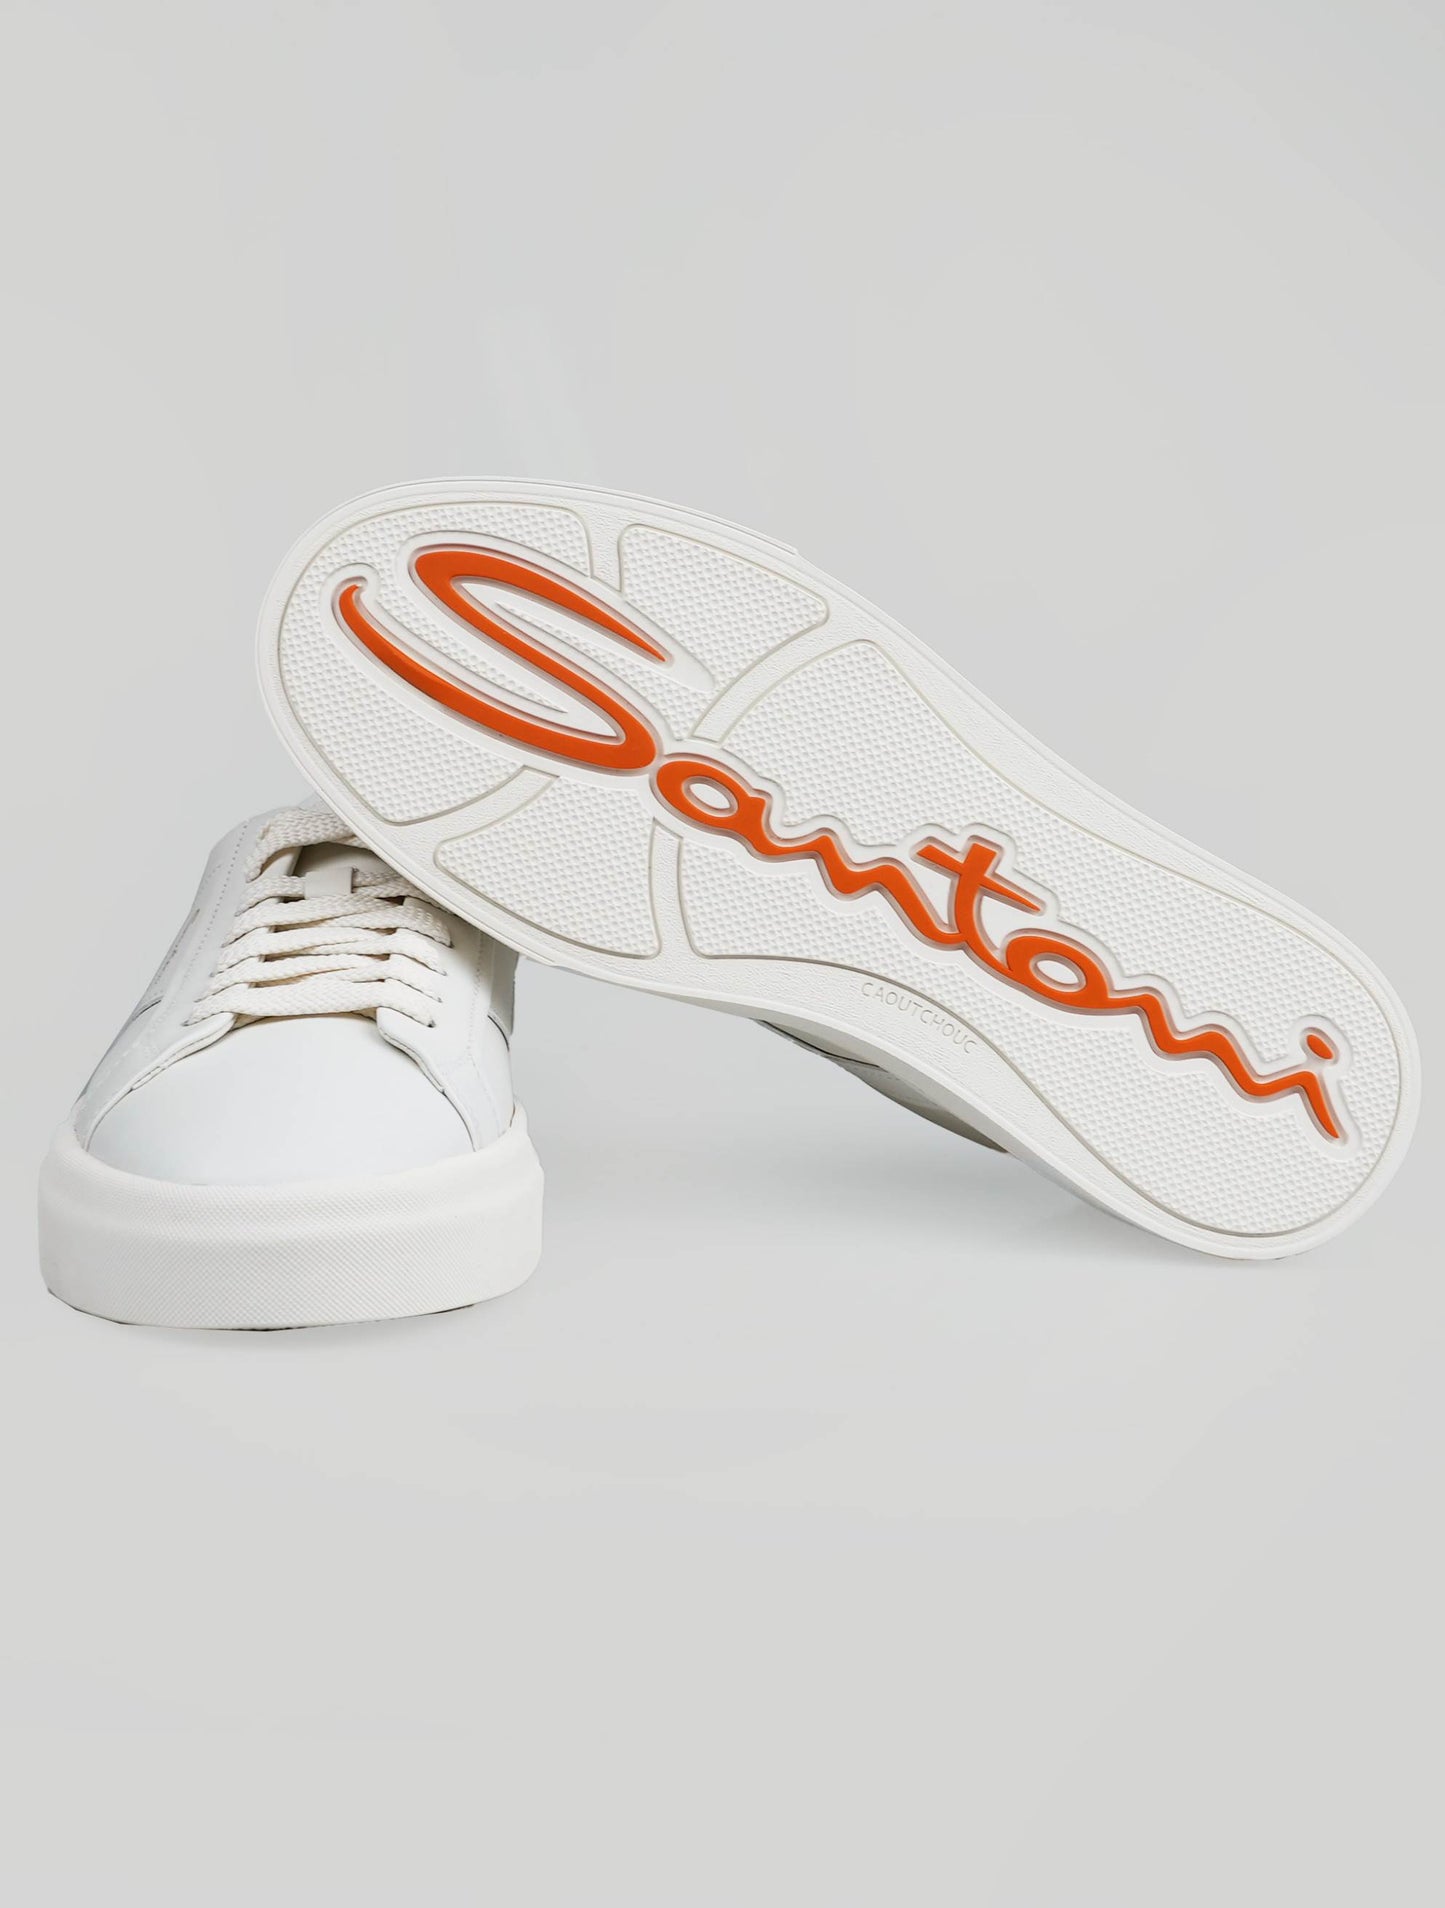 Zapatillas Santoni de piel blanca